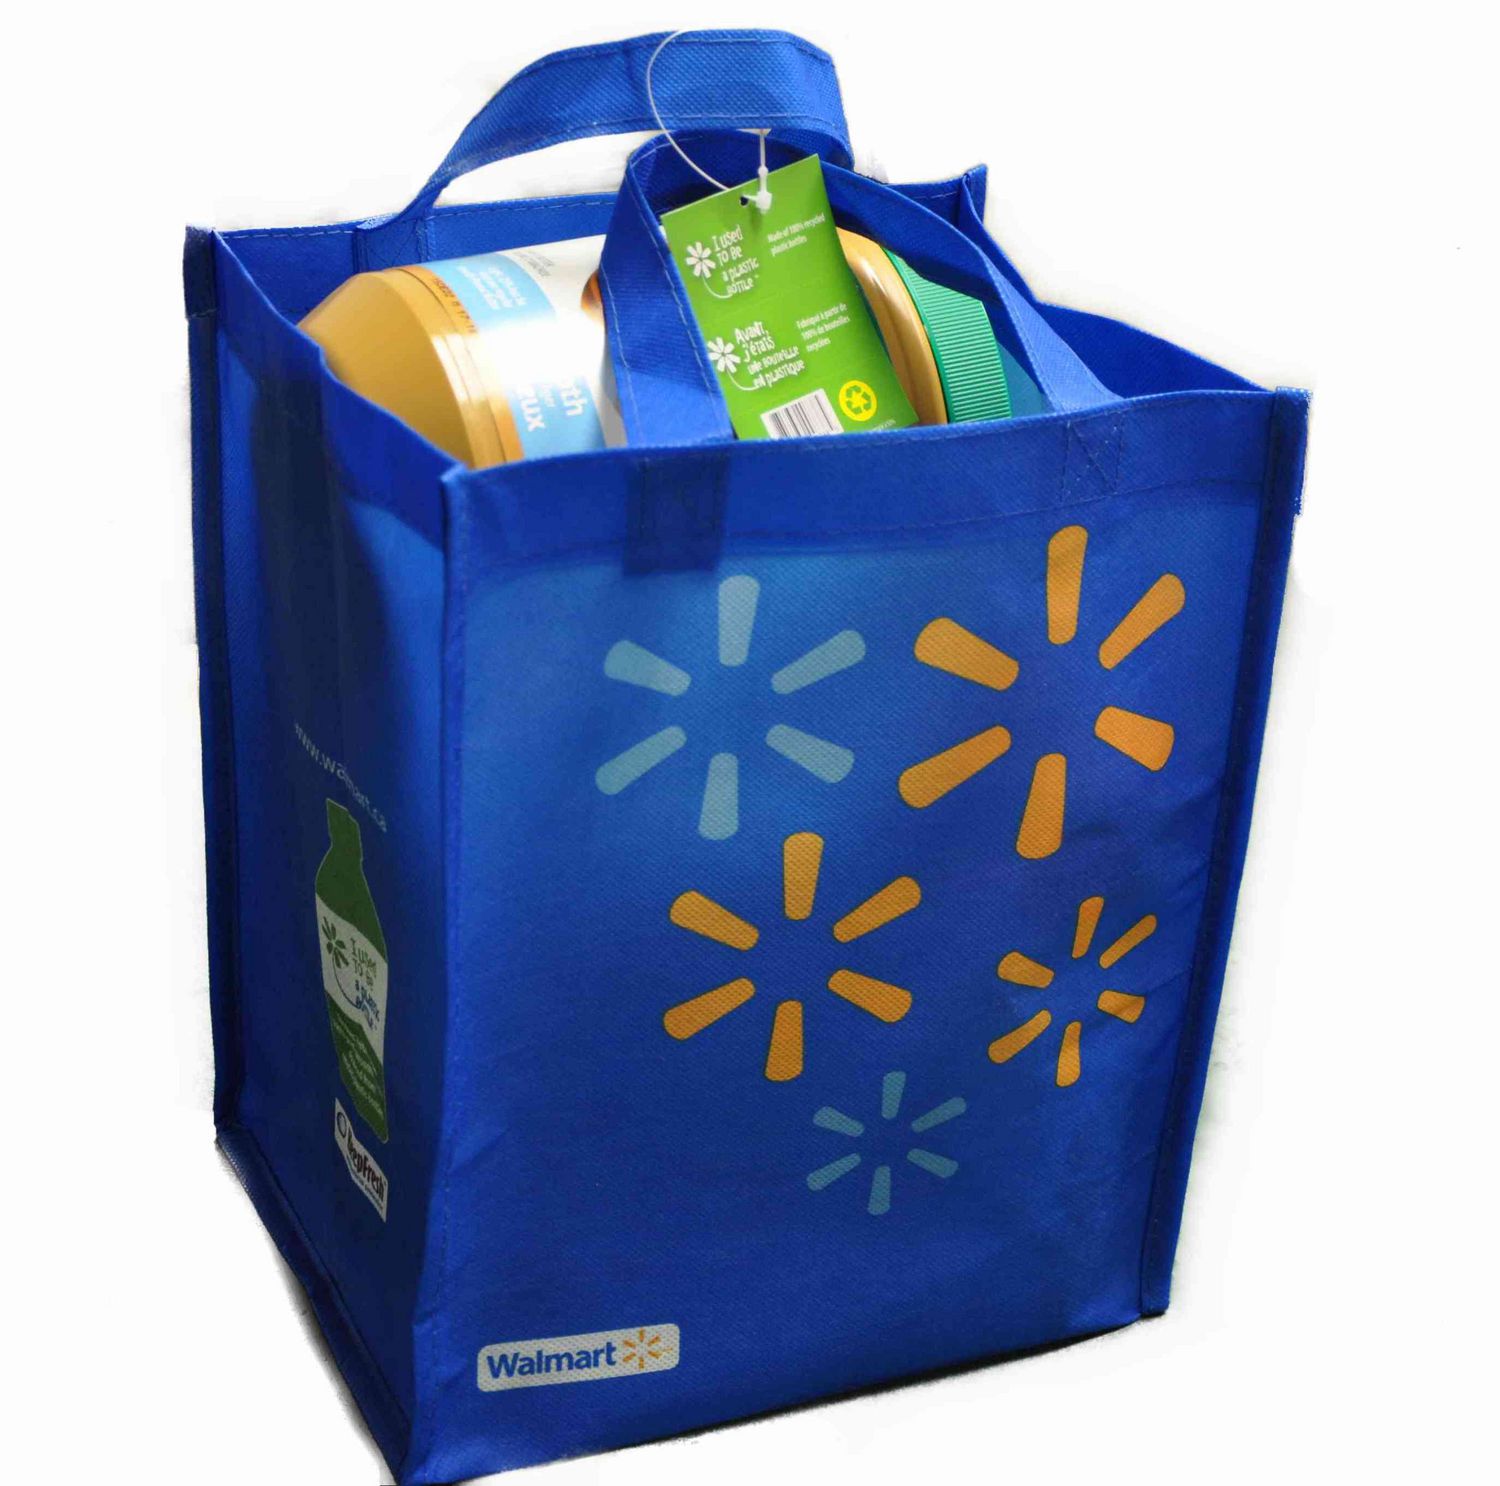 Flipkart Bags More Funding From Walmart This Week Keweenaw Bay